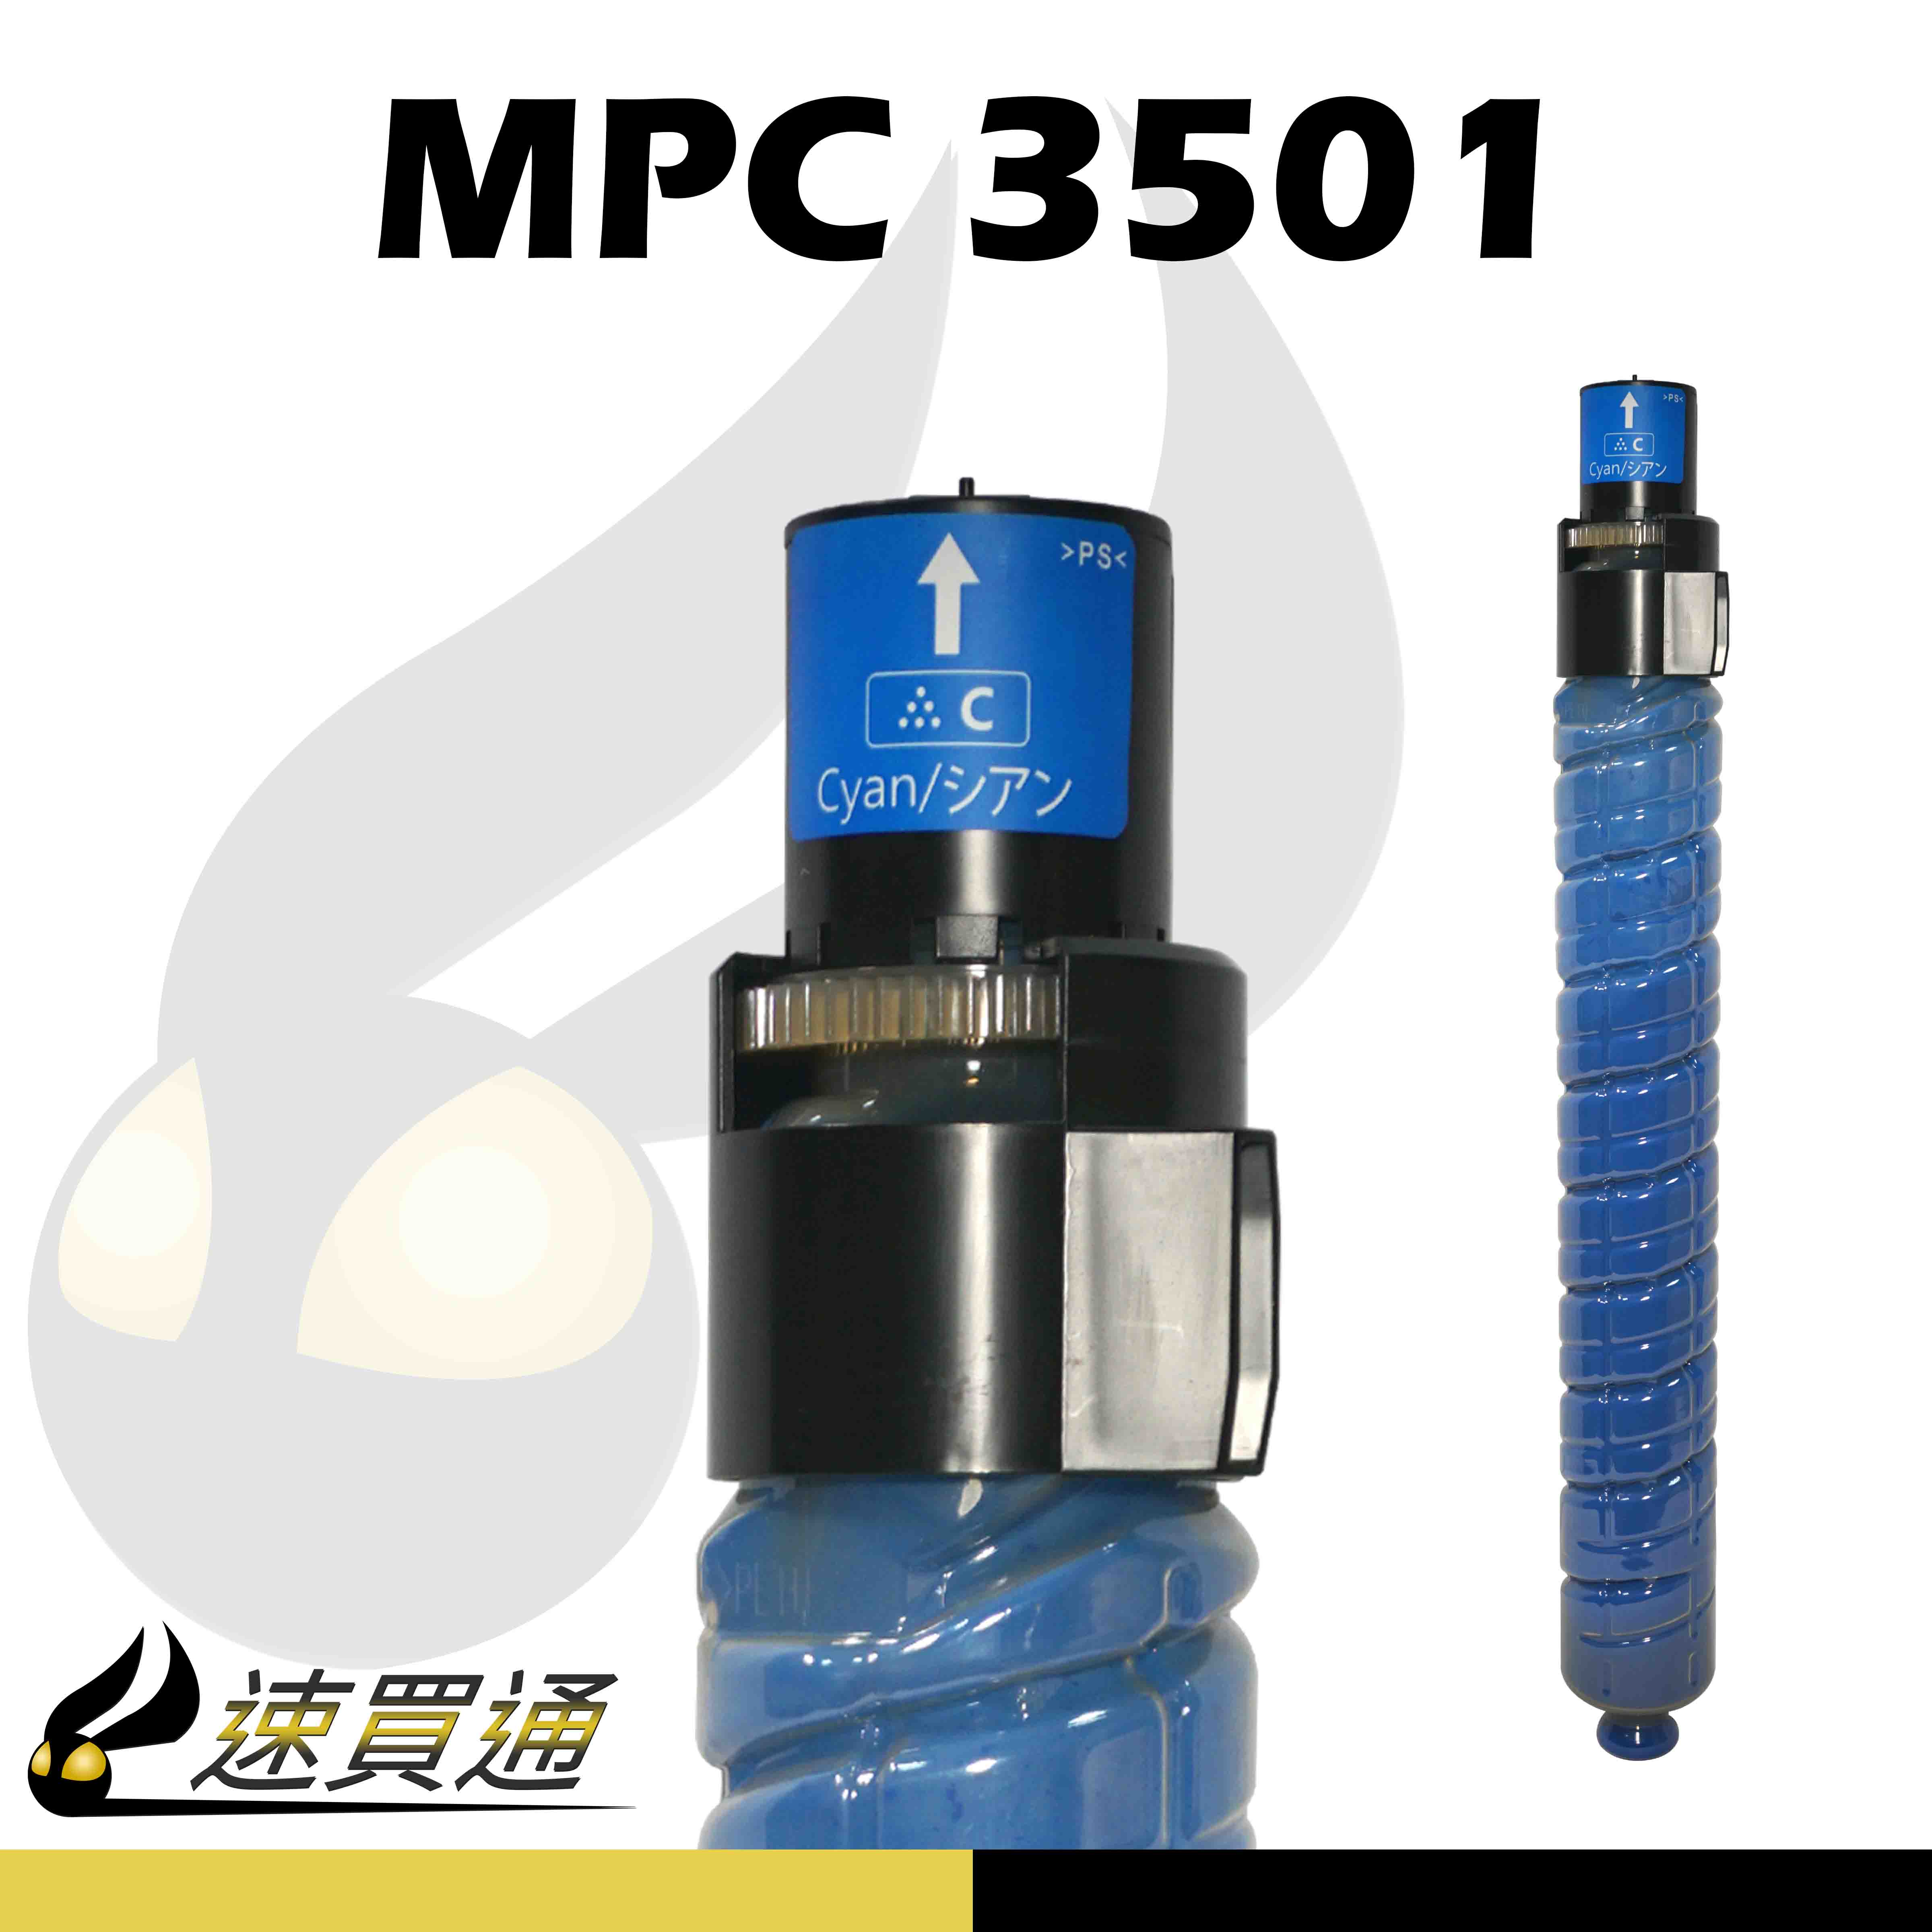 【速買通】RICOH MPC3501/MPC3001 藍 相容影印機碳粉匣